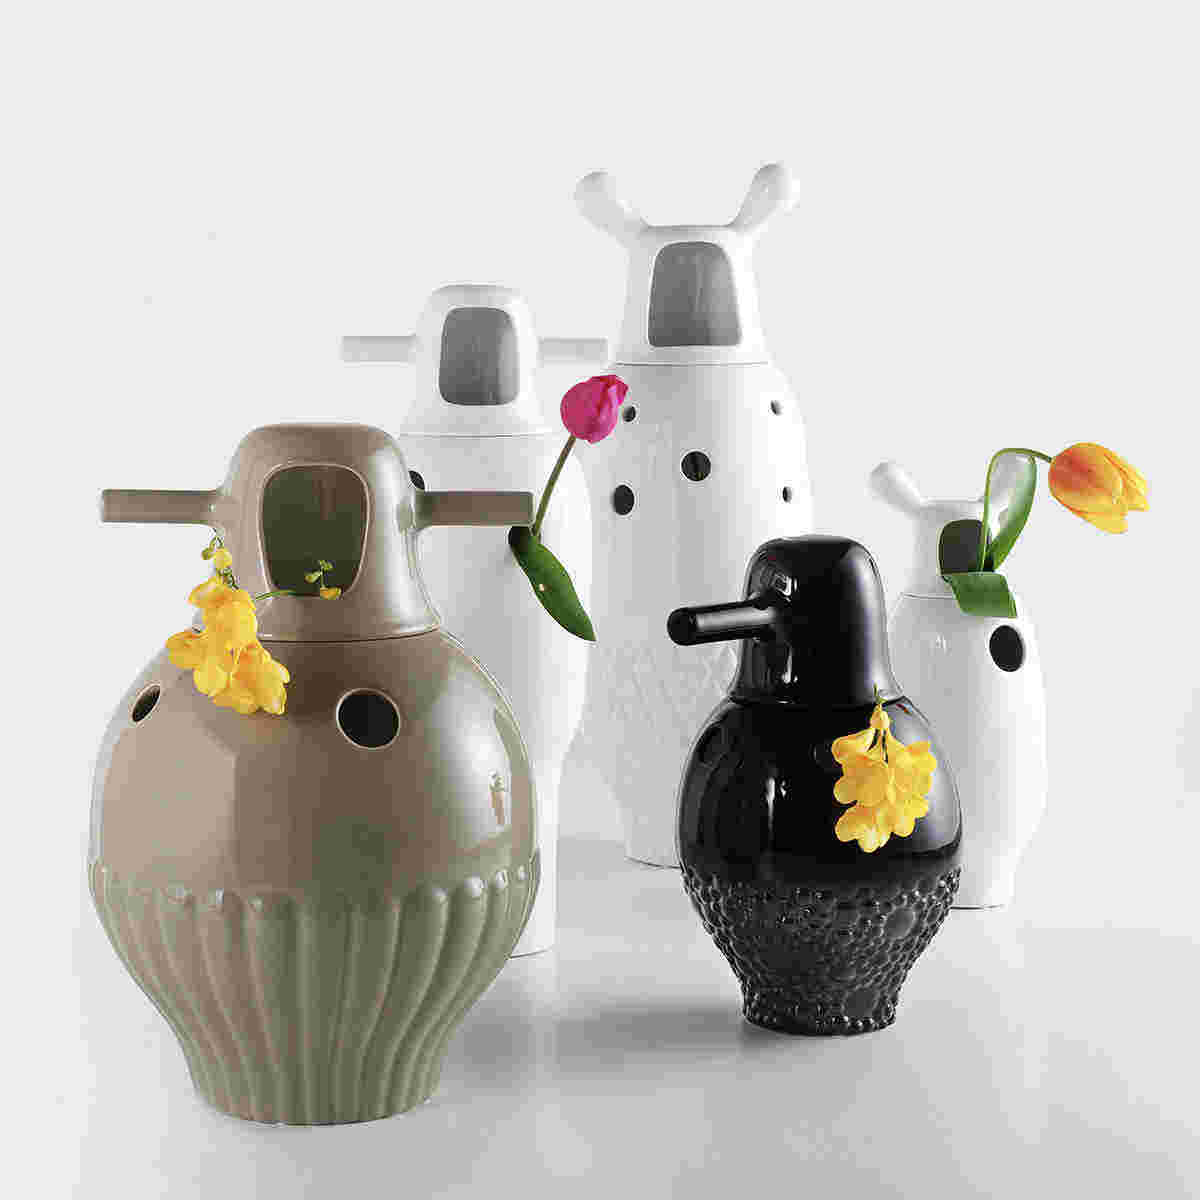 b.d barcelona design  Showtime Vasses 花瓶